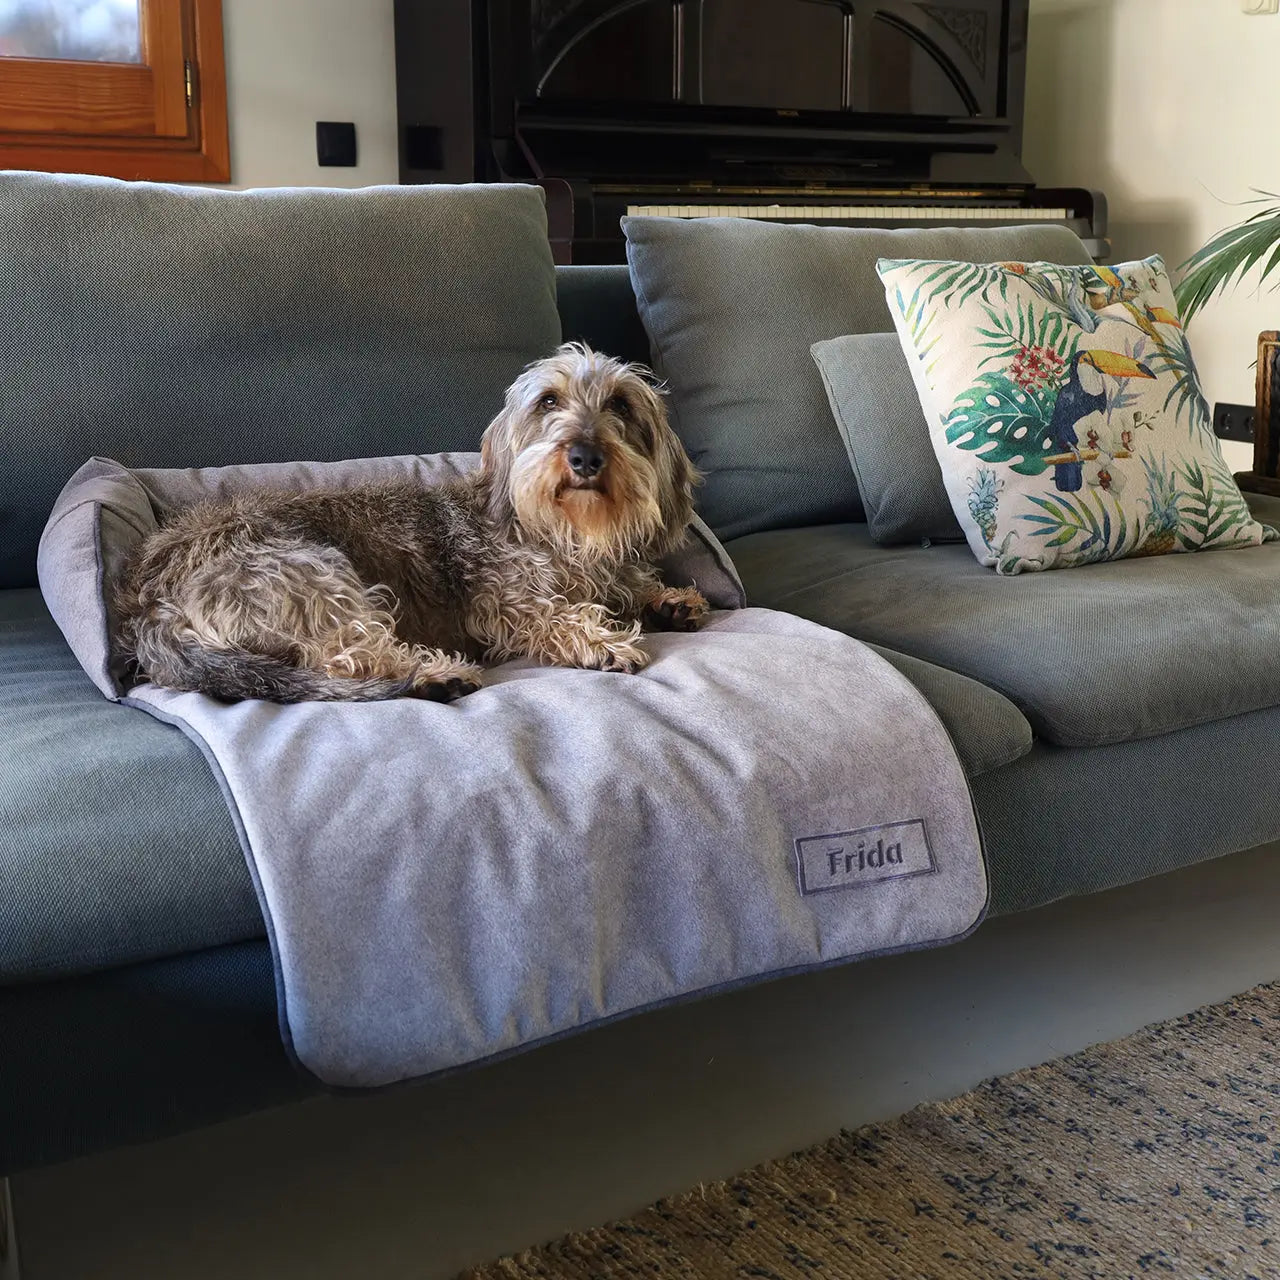 Mi mascota se sube al sofá… ¿debo dejarle?